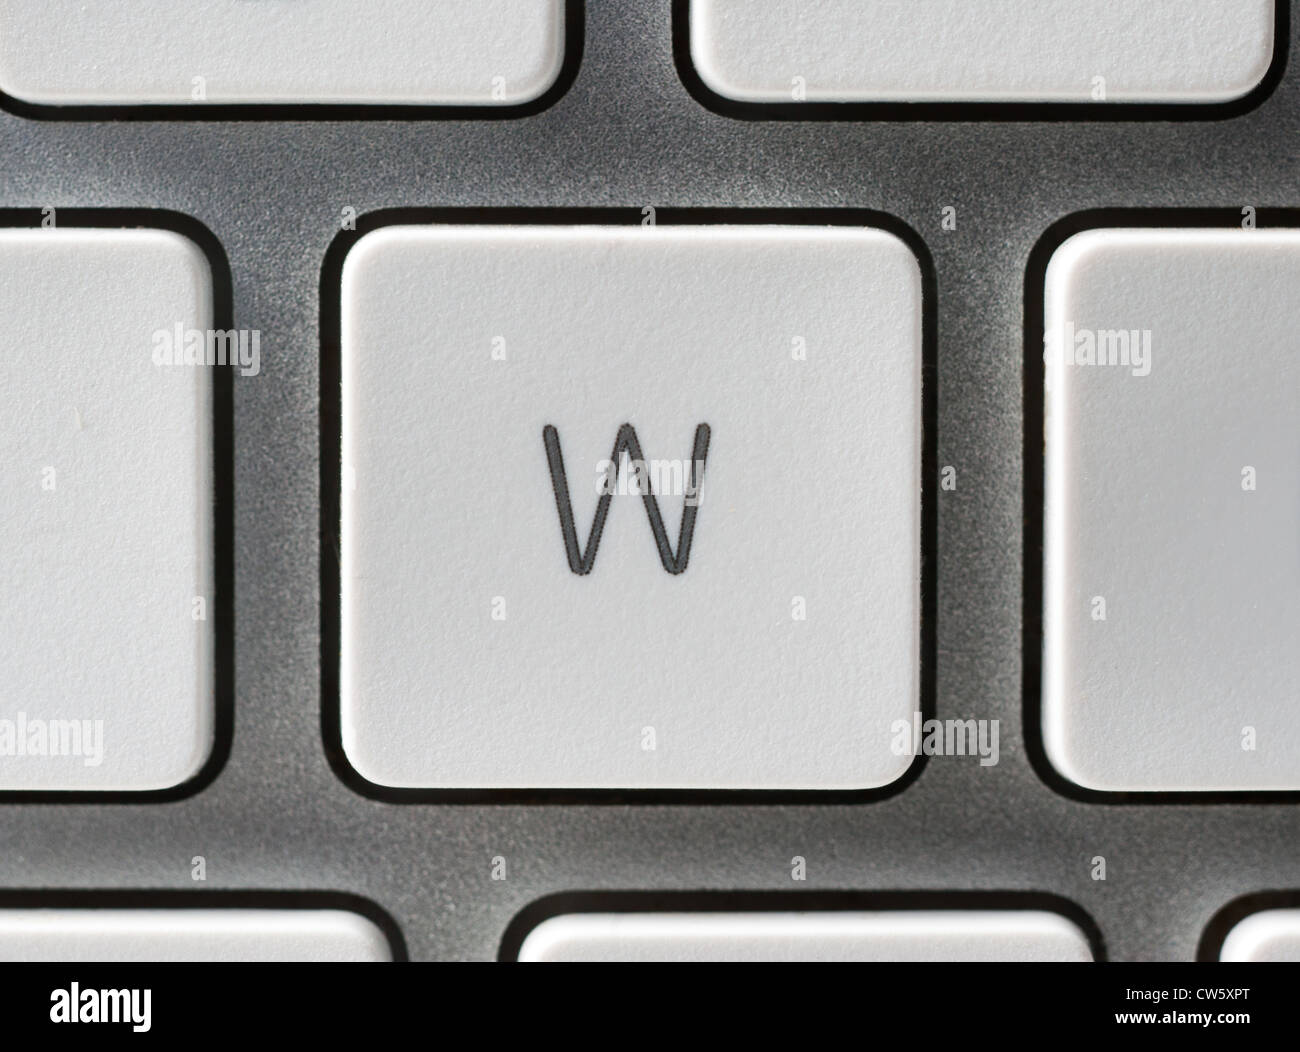 Buchstabe W auf einer Apple-Tastatur Stockfoto